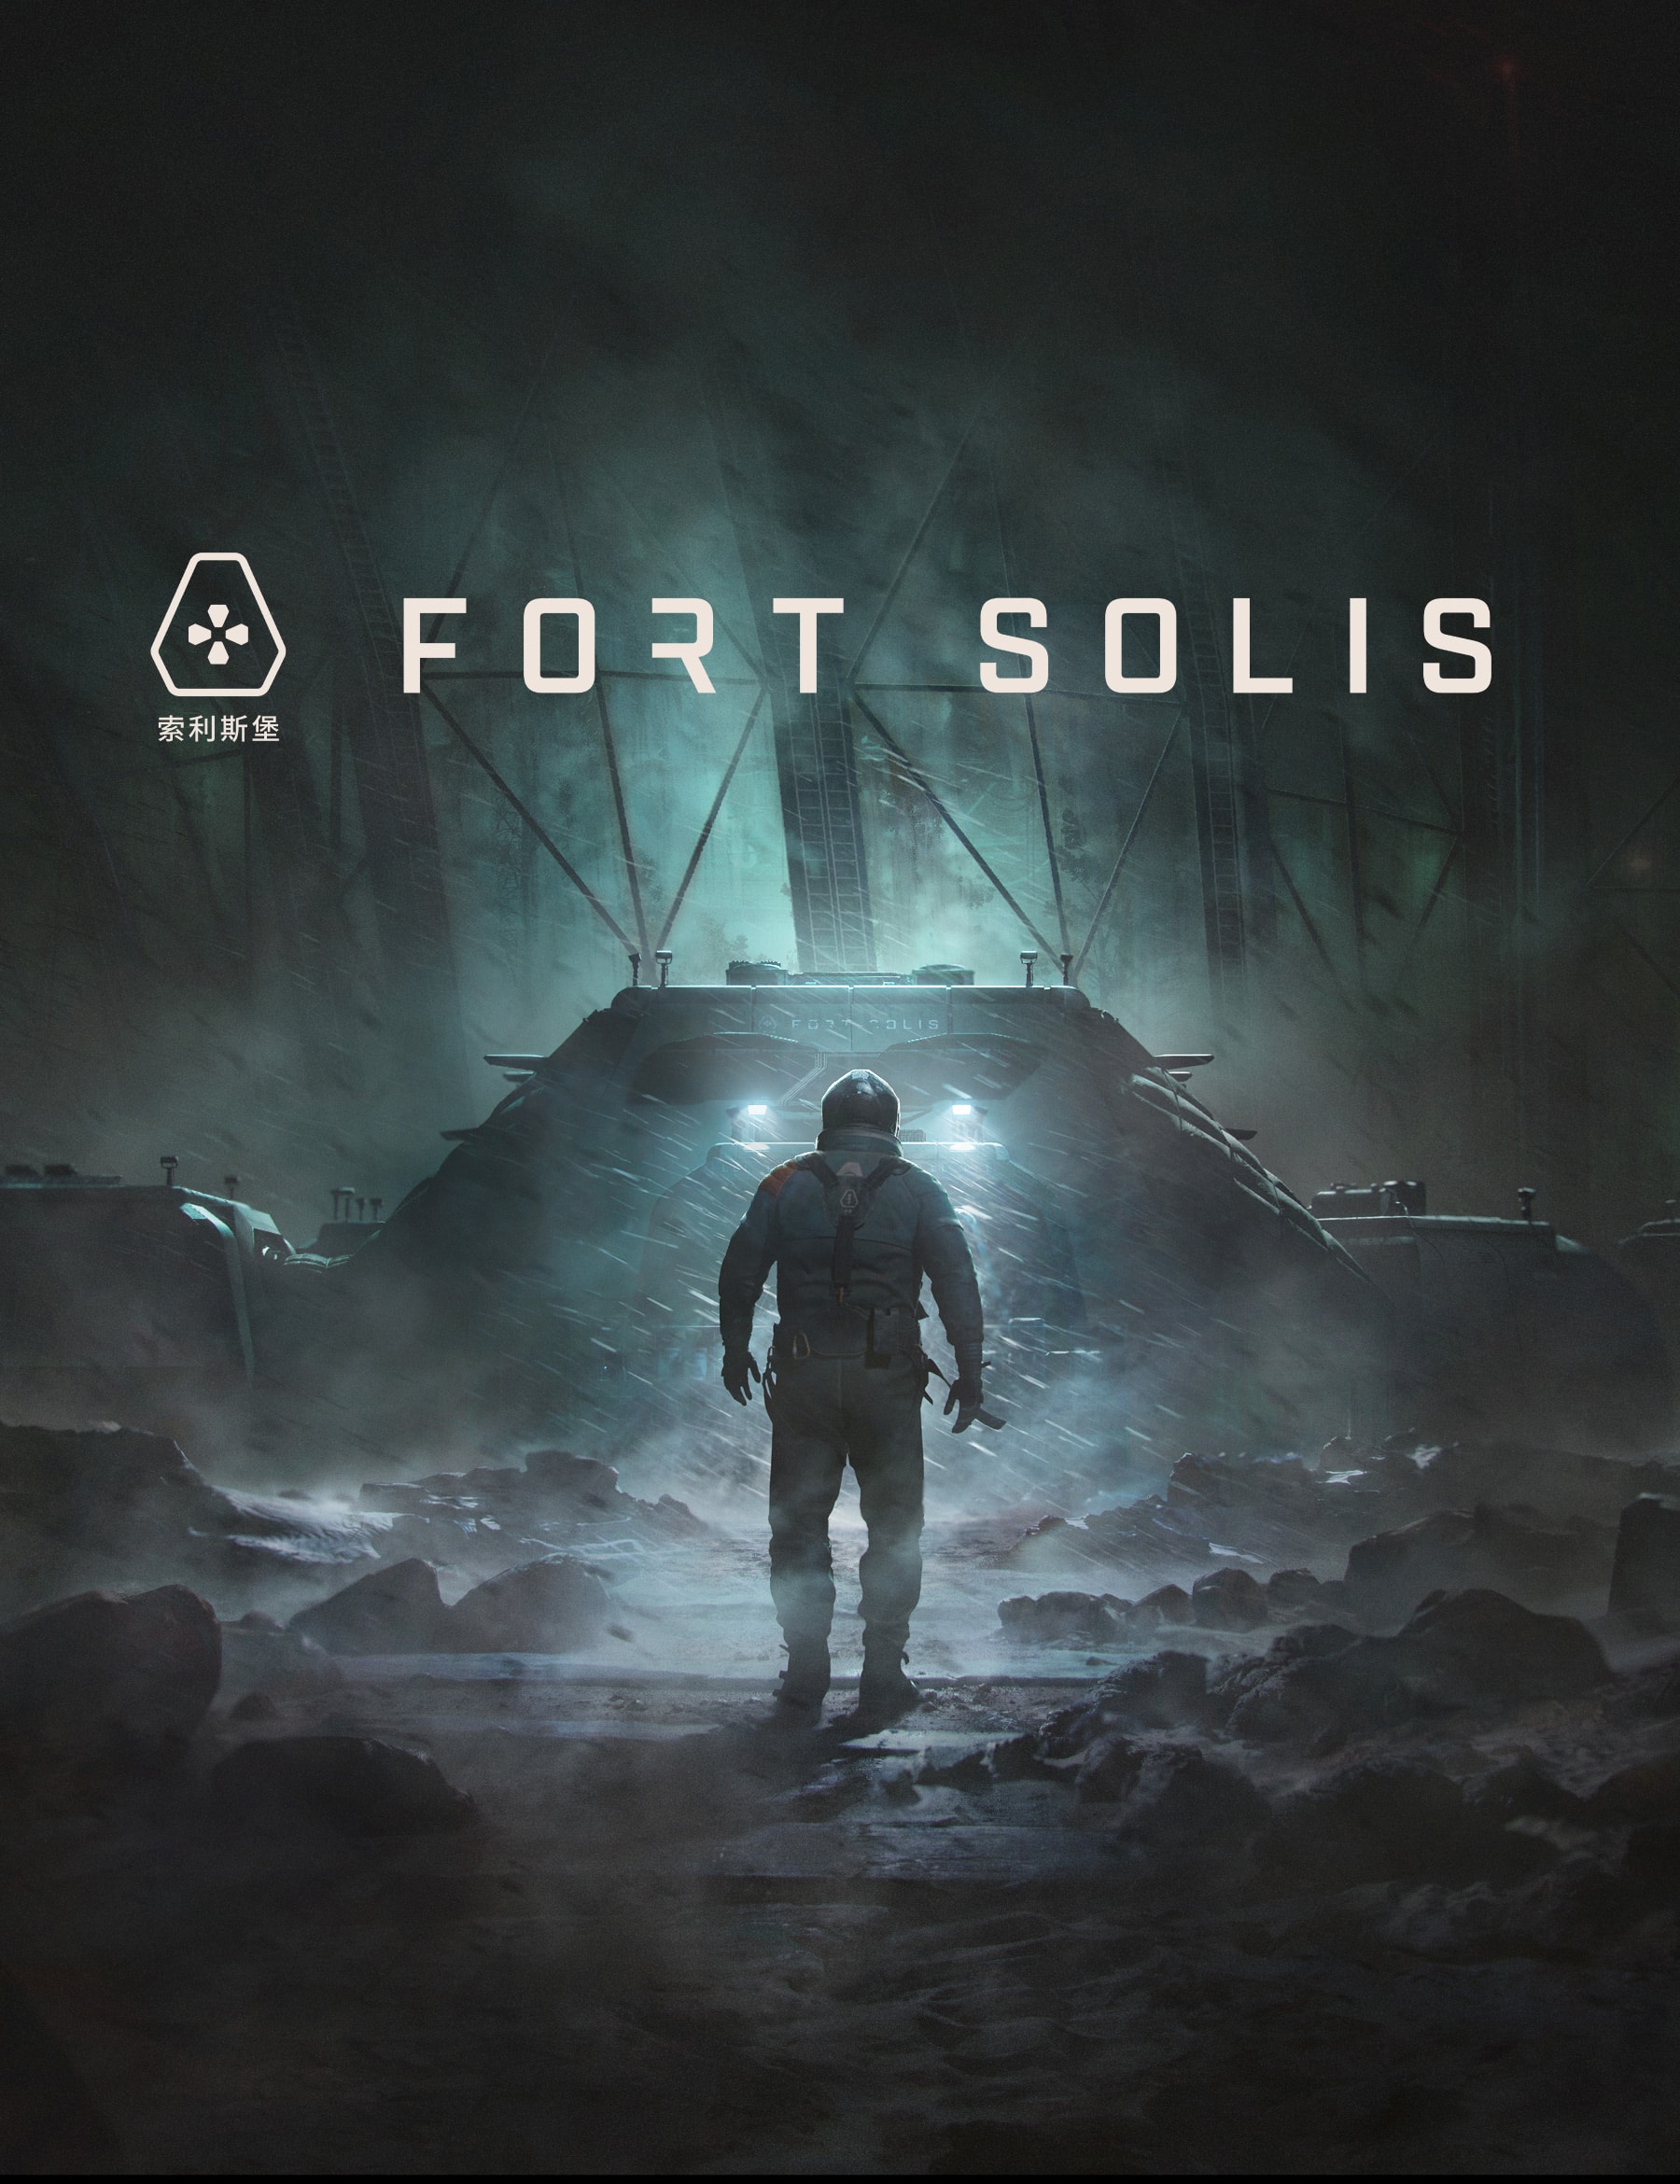 Fort solis key art video game